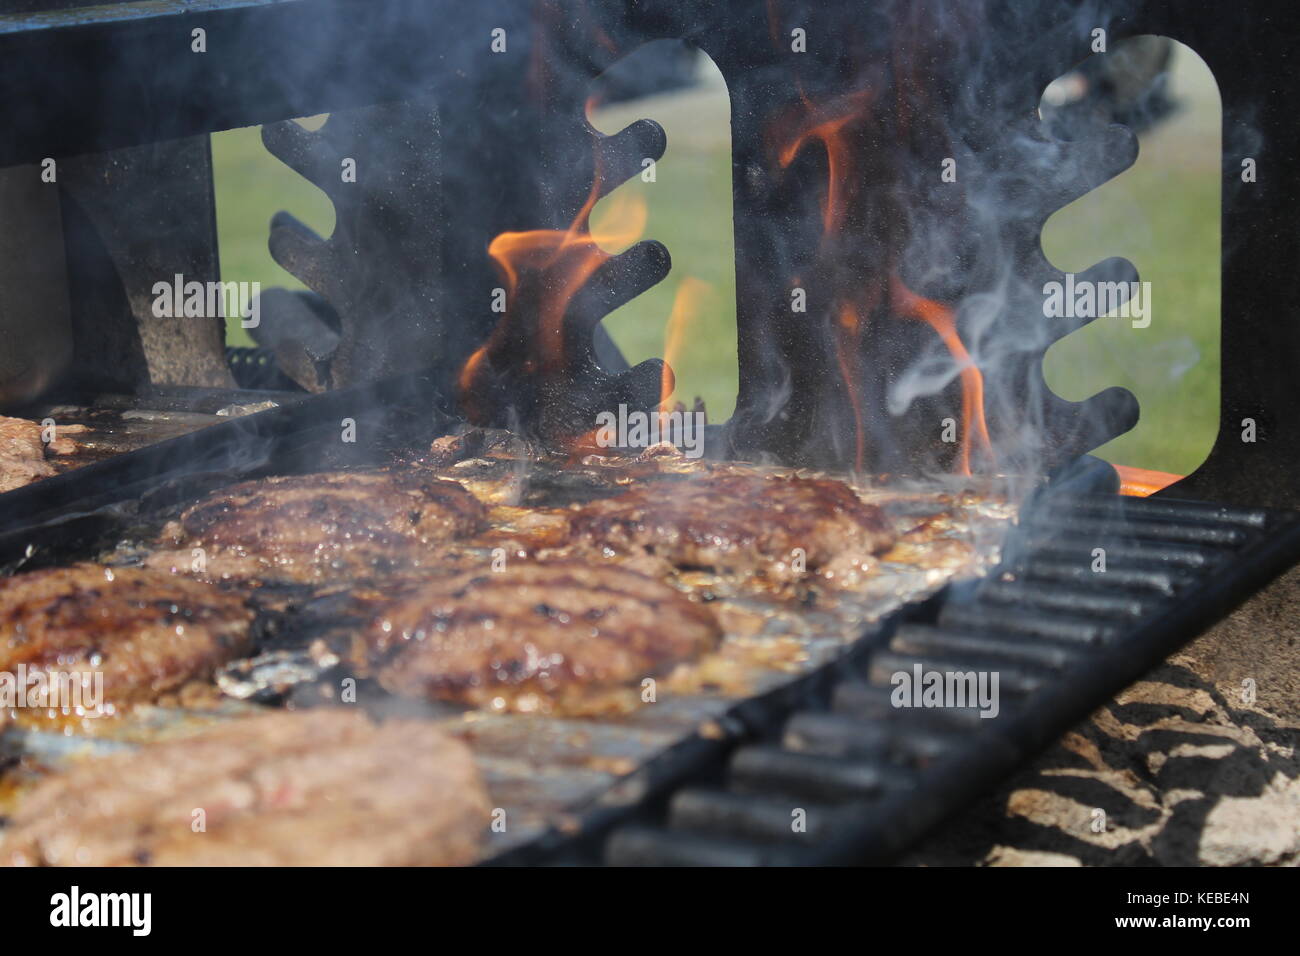 https://c8.alamy.com/comp/KEBE4N/summer-grill-cookout-KEBE4N.jpg